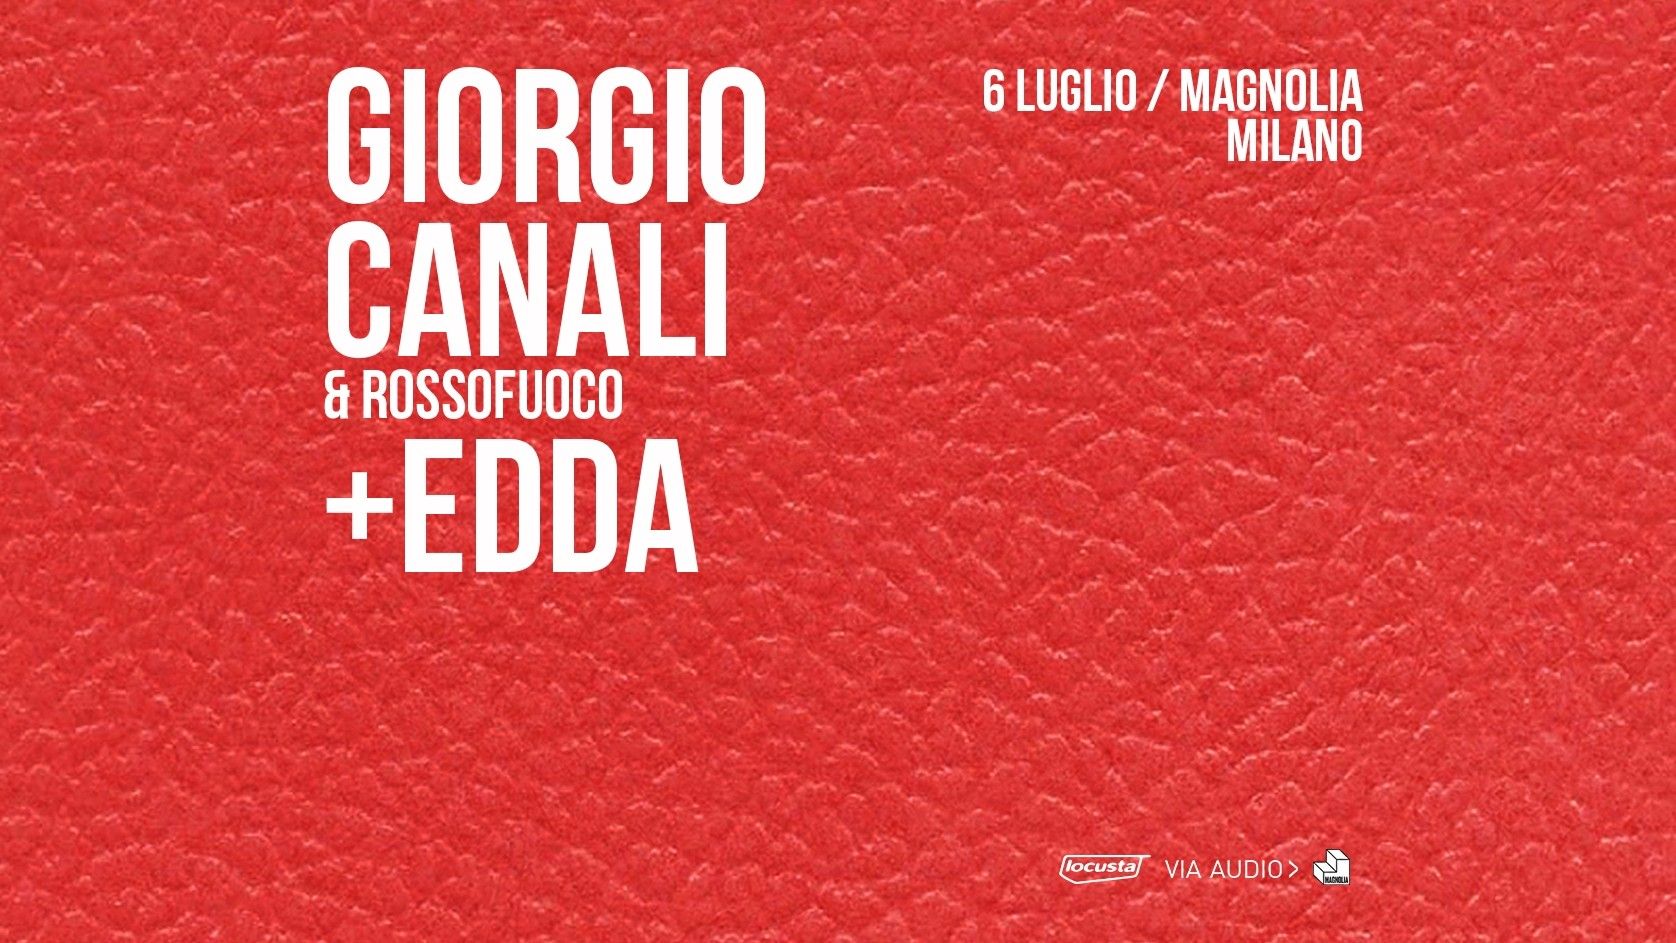 Giorgio Canali & Rossofuoco + Edda